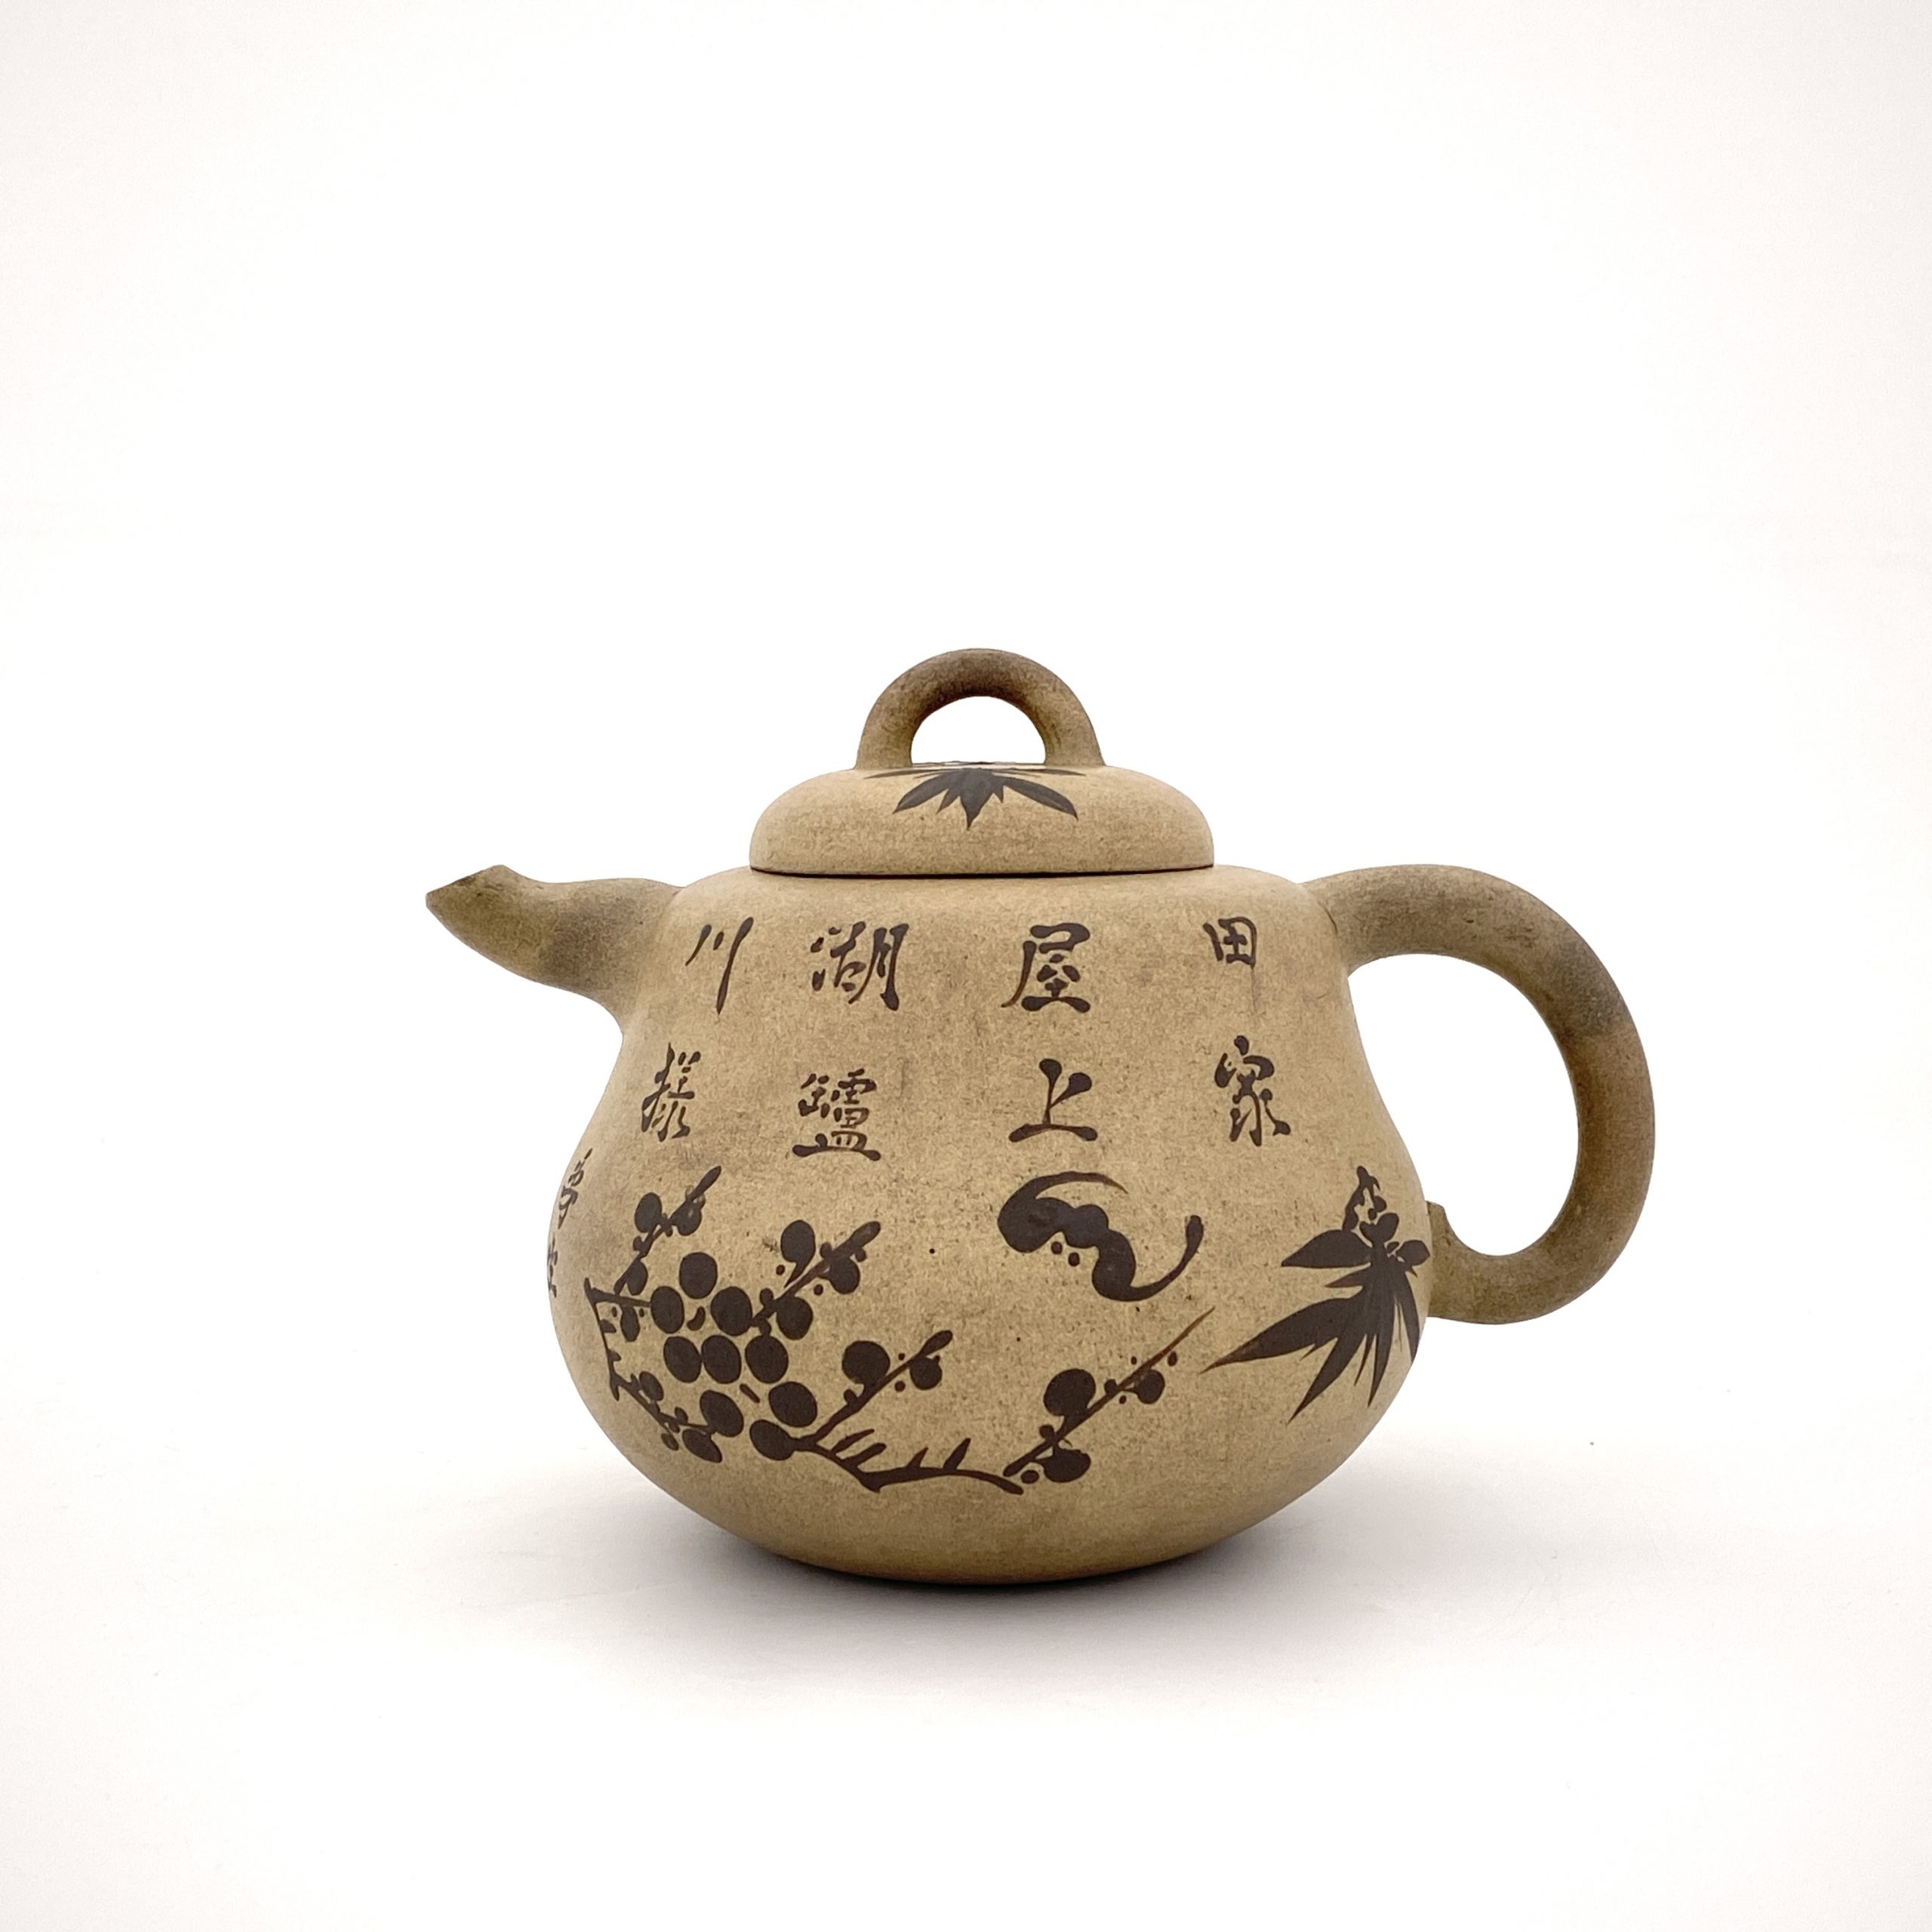 23432	「曼生」「石宋」款 白泥泥絵 花鳥紋 茶壺